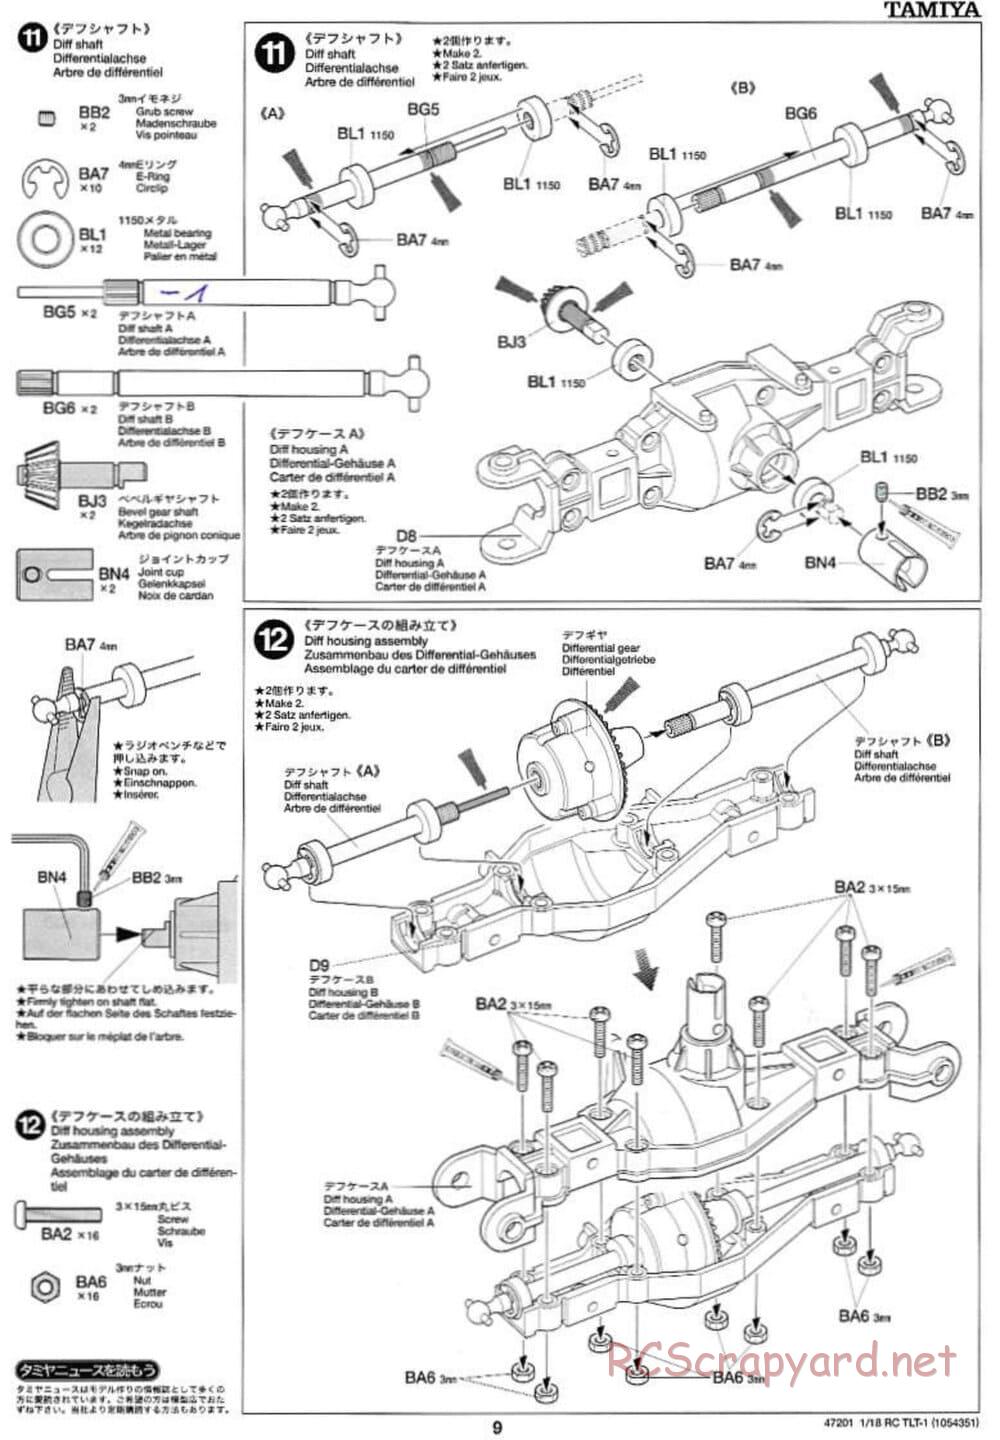 Tamiya - Rock Buster - TLT-1 Chassis - Manual - Page 9